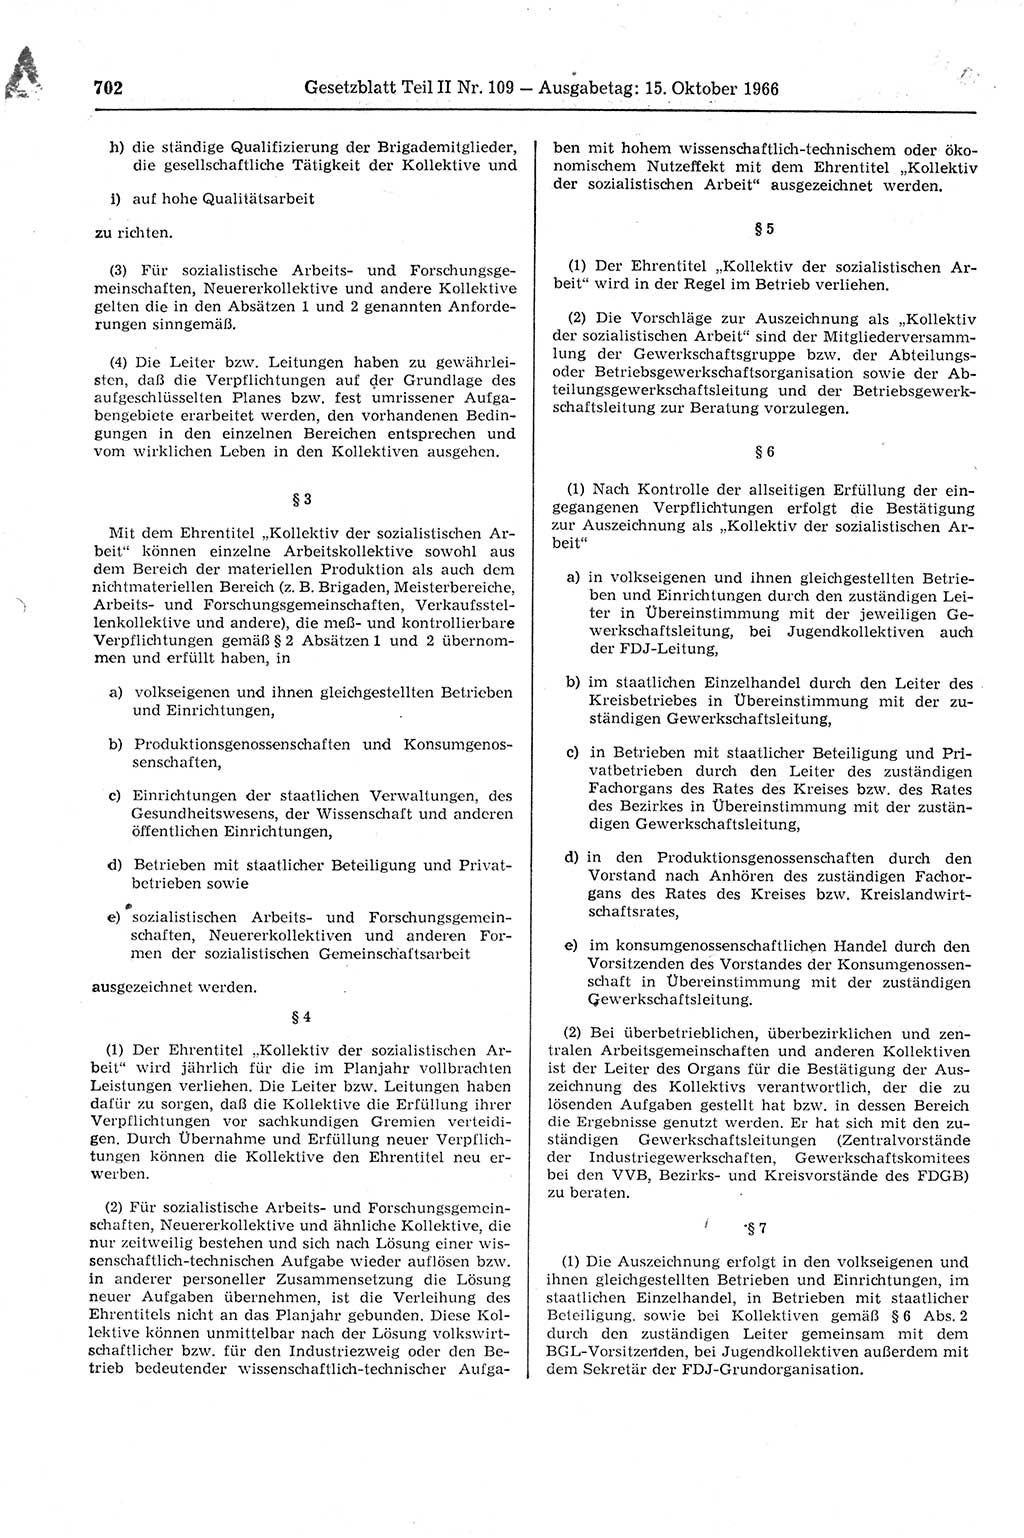 Gesetzblatt (GBl.) der Deutschen Demokratischen Republik (DDR) Teil ⅠⅠ 1966, Seite 702 (GBl. DDR ⅠⅠ 1966, S. 702)